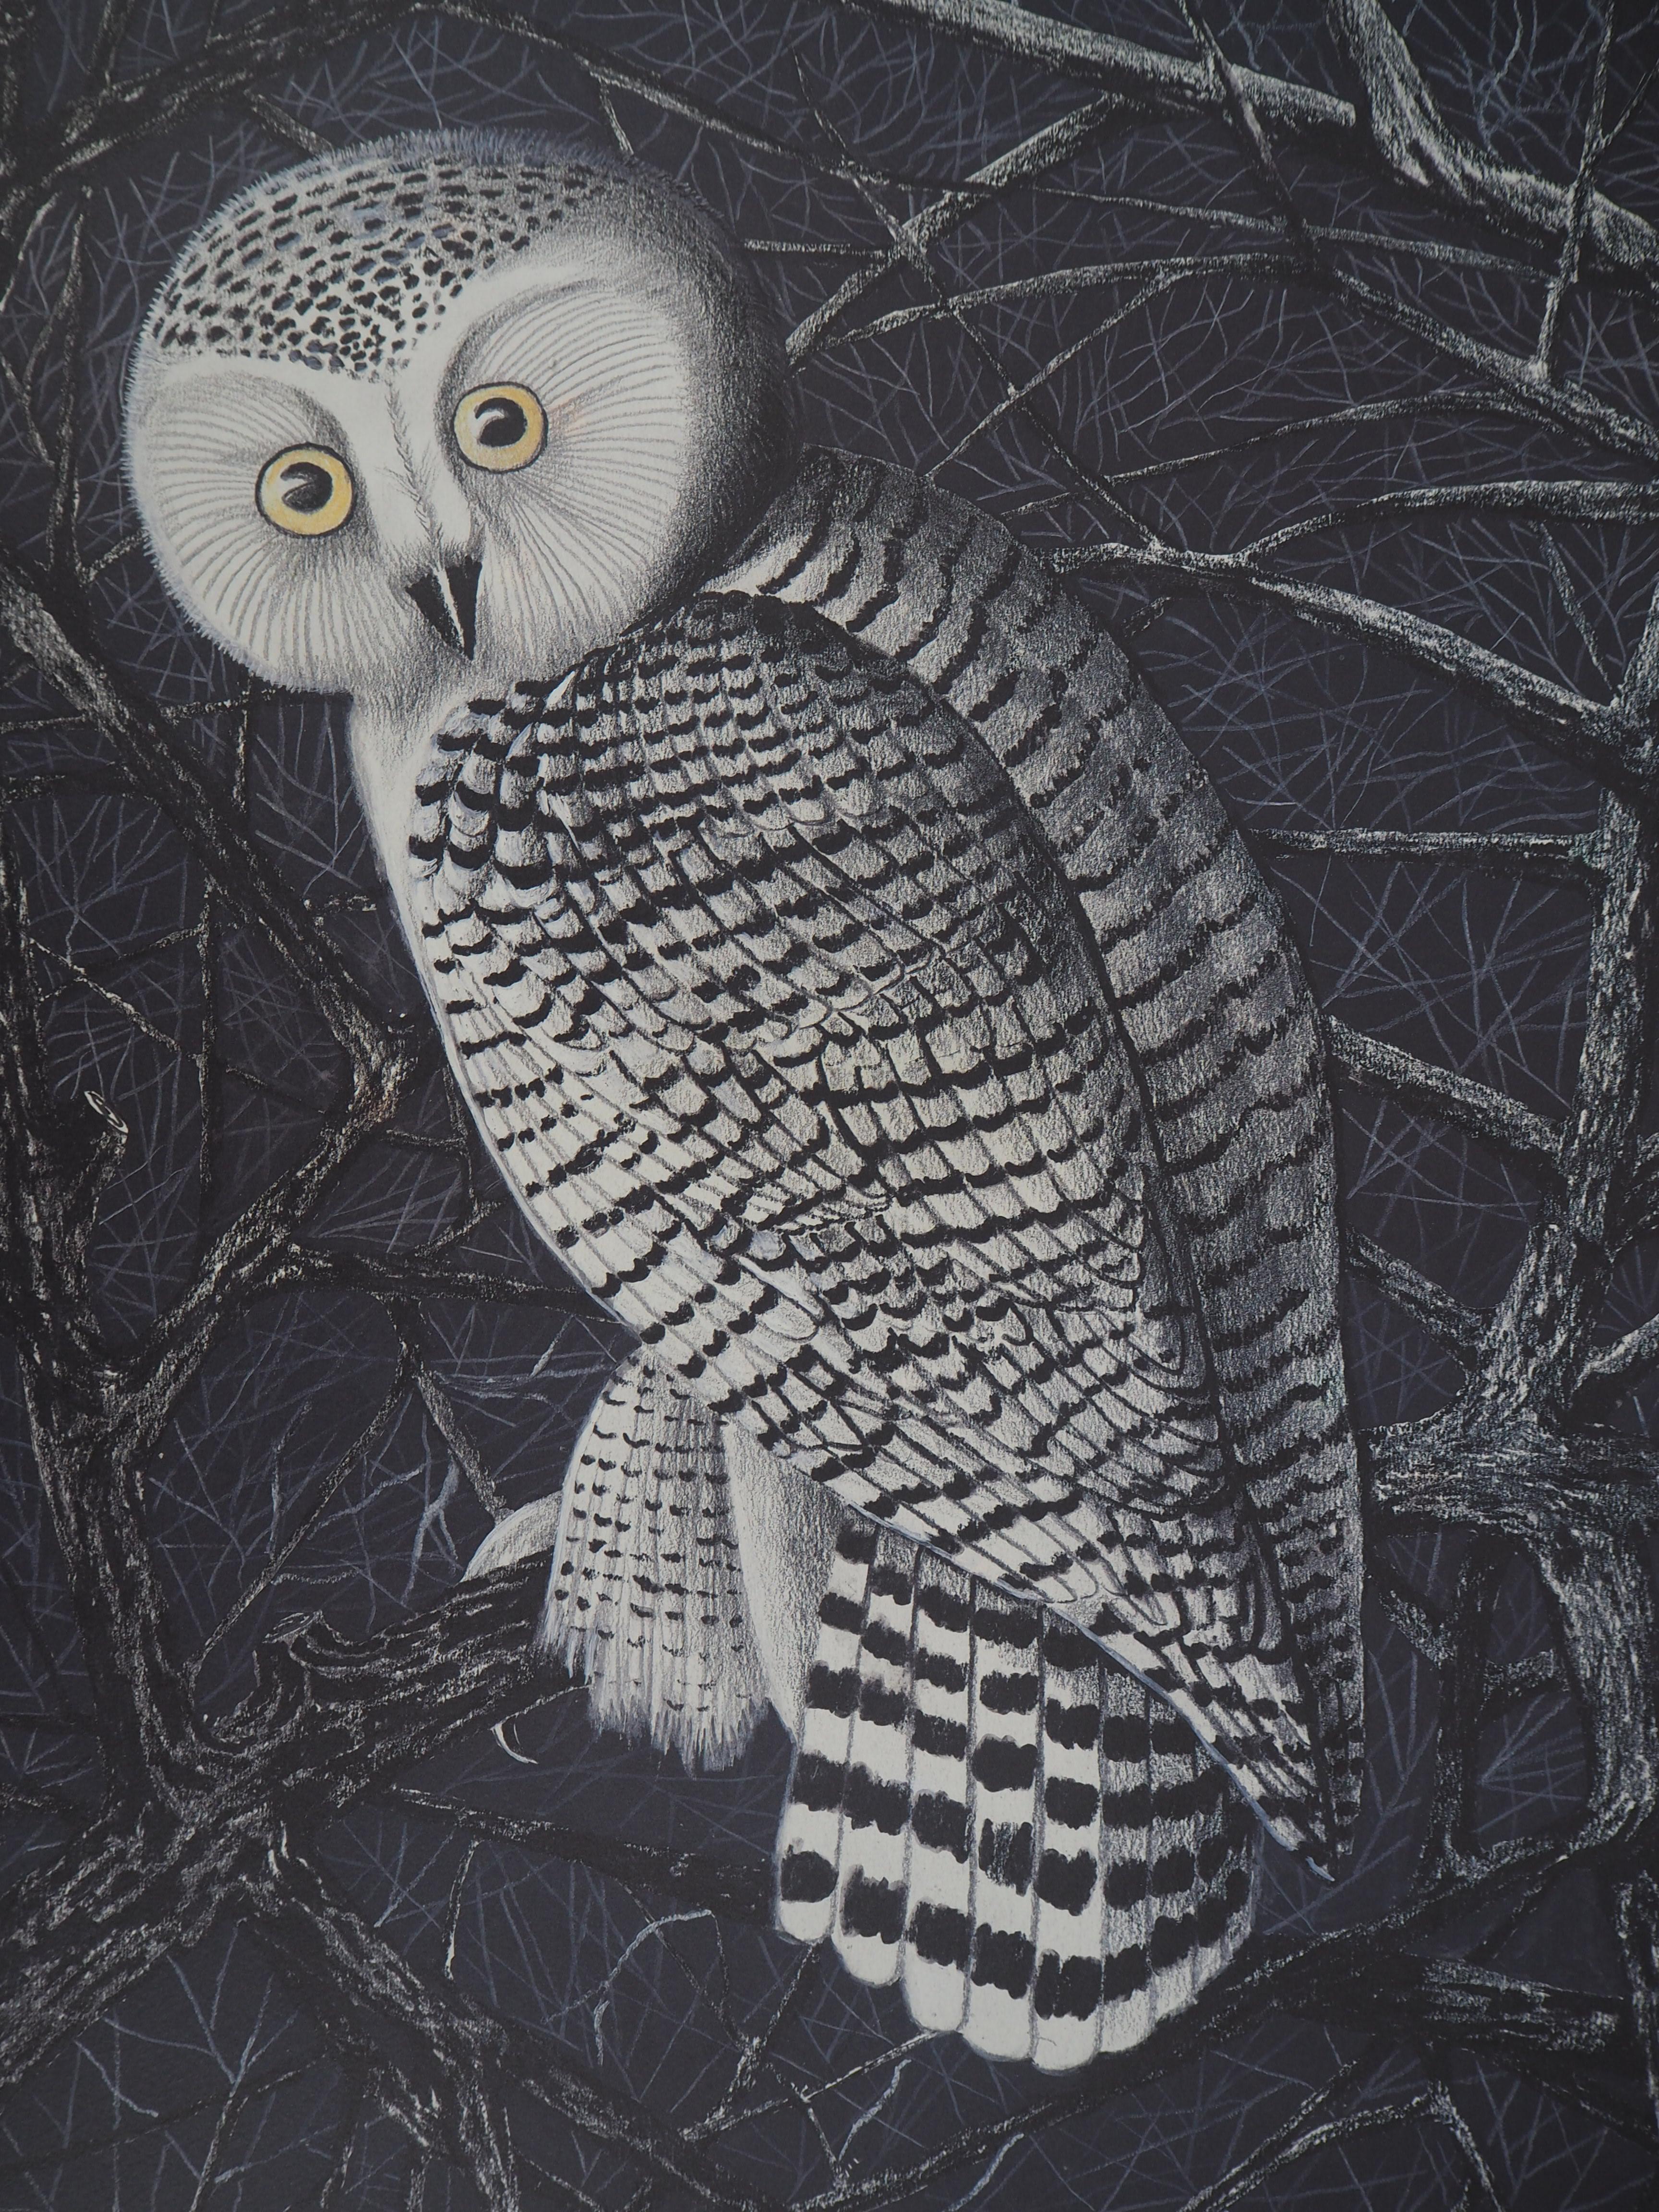 The Owl - Lithograph, Ltd 50 copies - Modern Print by Jean Marais